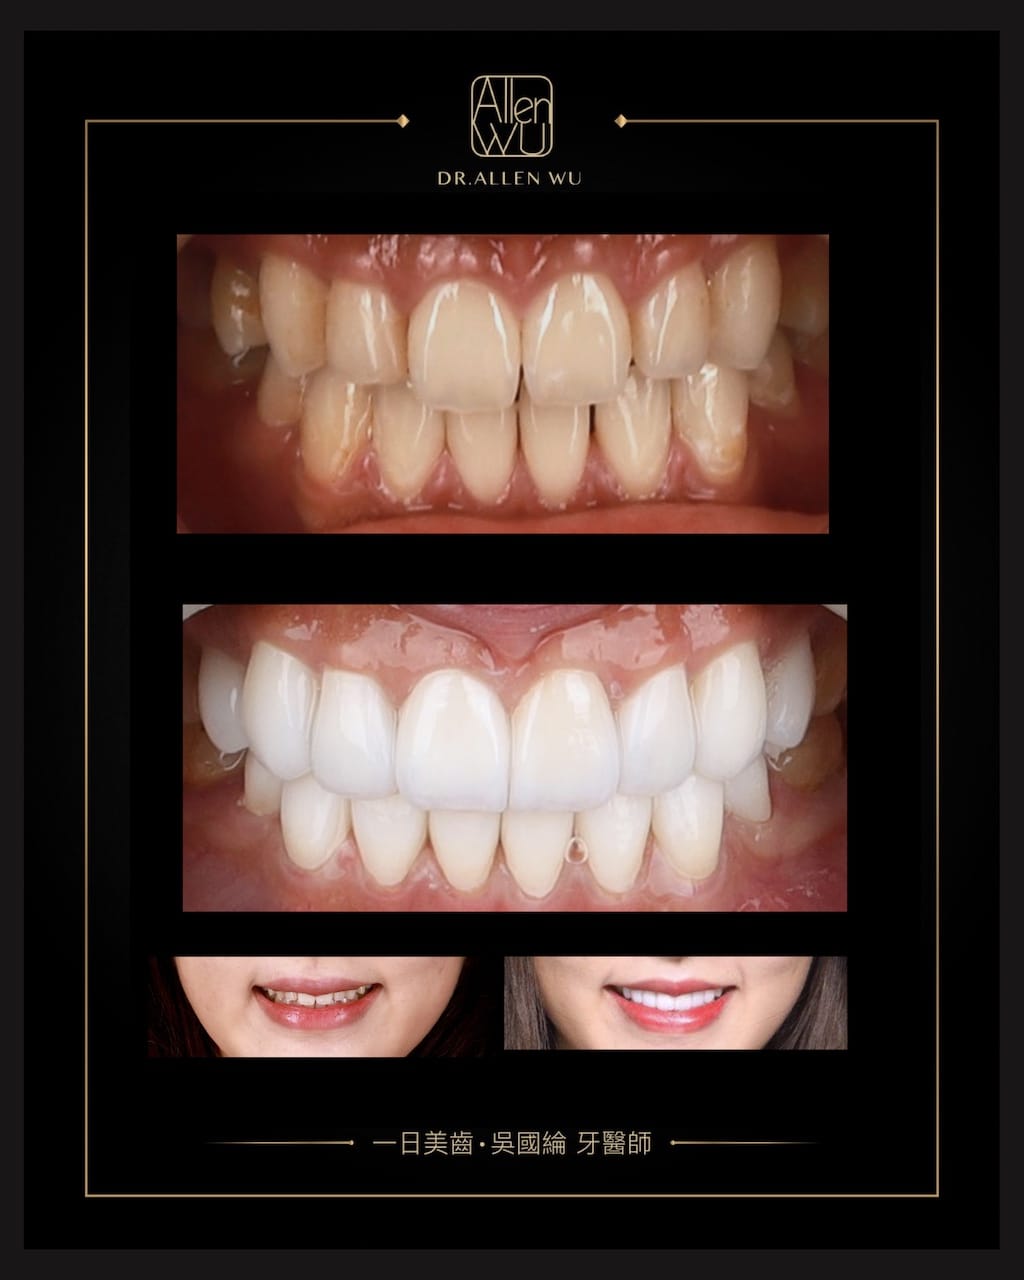 瓷牙貼片-DSD數位微笑設計-牙齒唇形-陶瓷貼片前後比較-牙齒美白貼片推薦專家-台中-吳國綸醫師